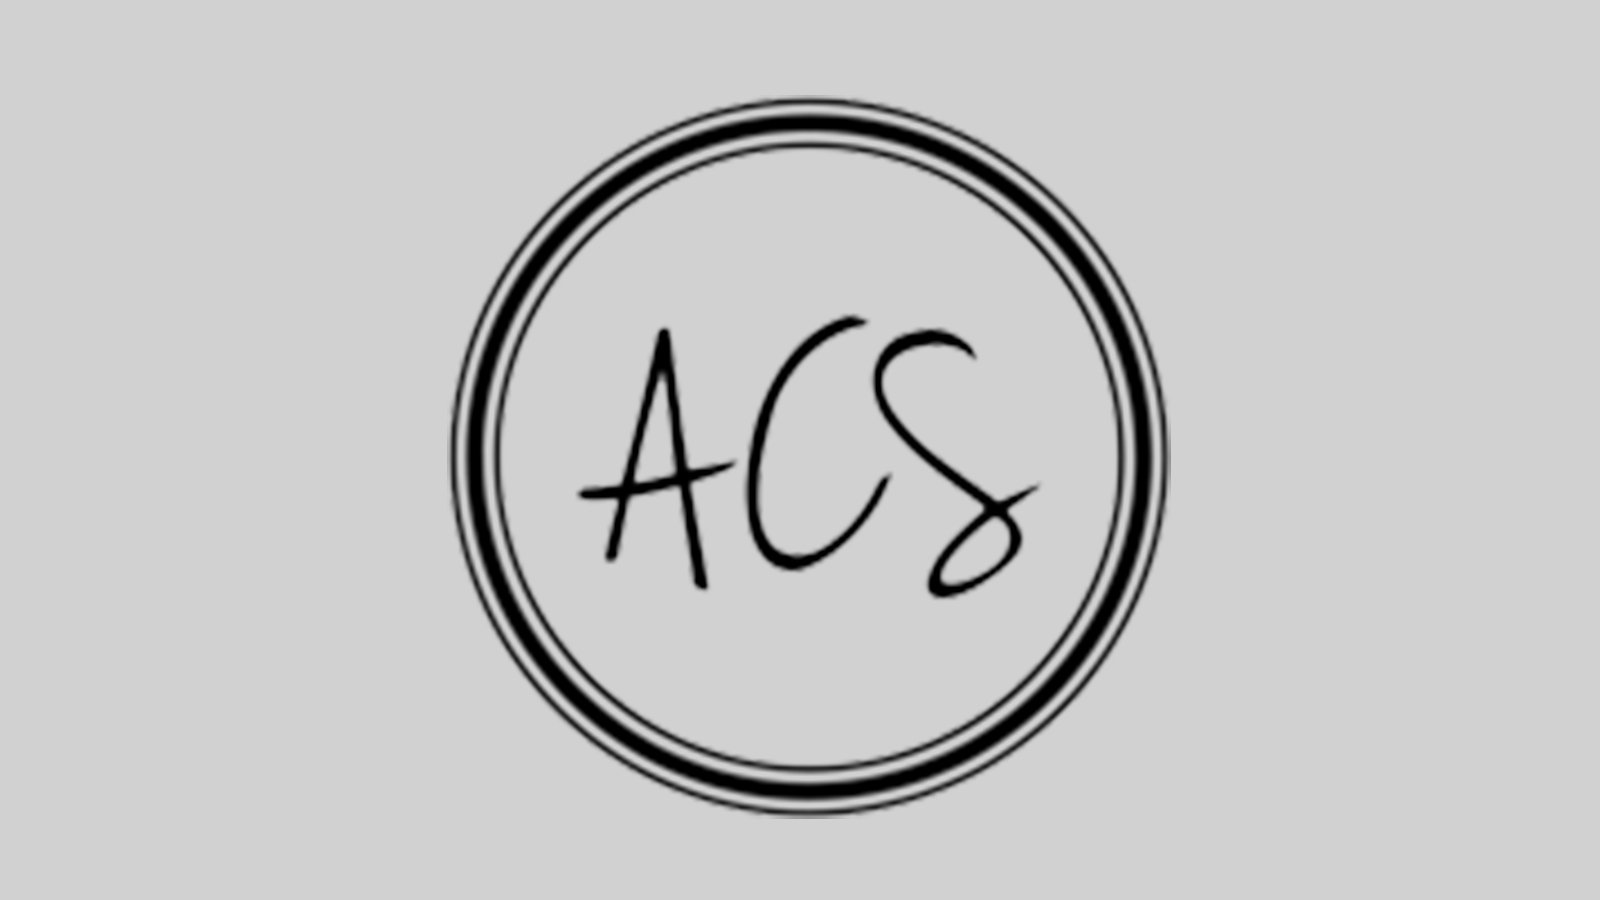 ACS-Logo-Grey-BG-1.jpg